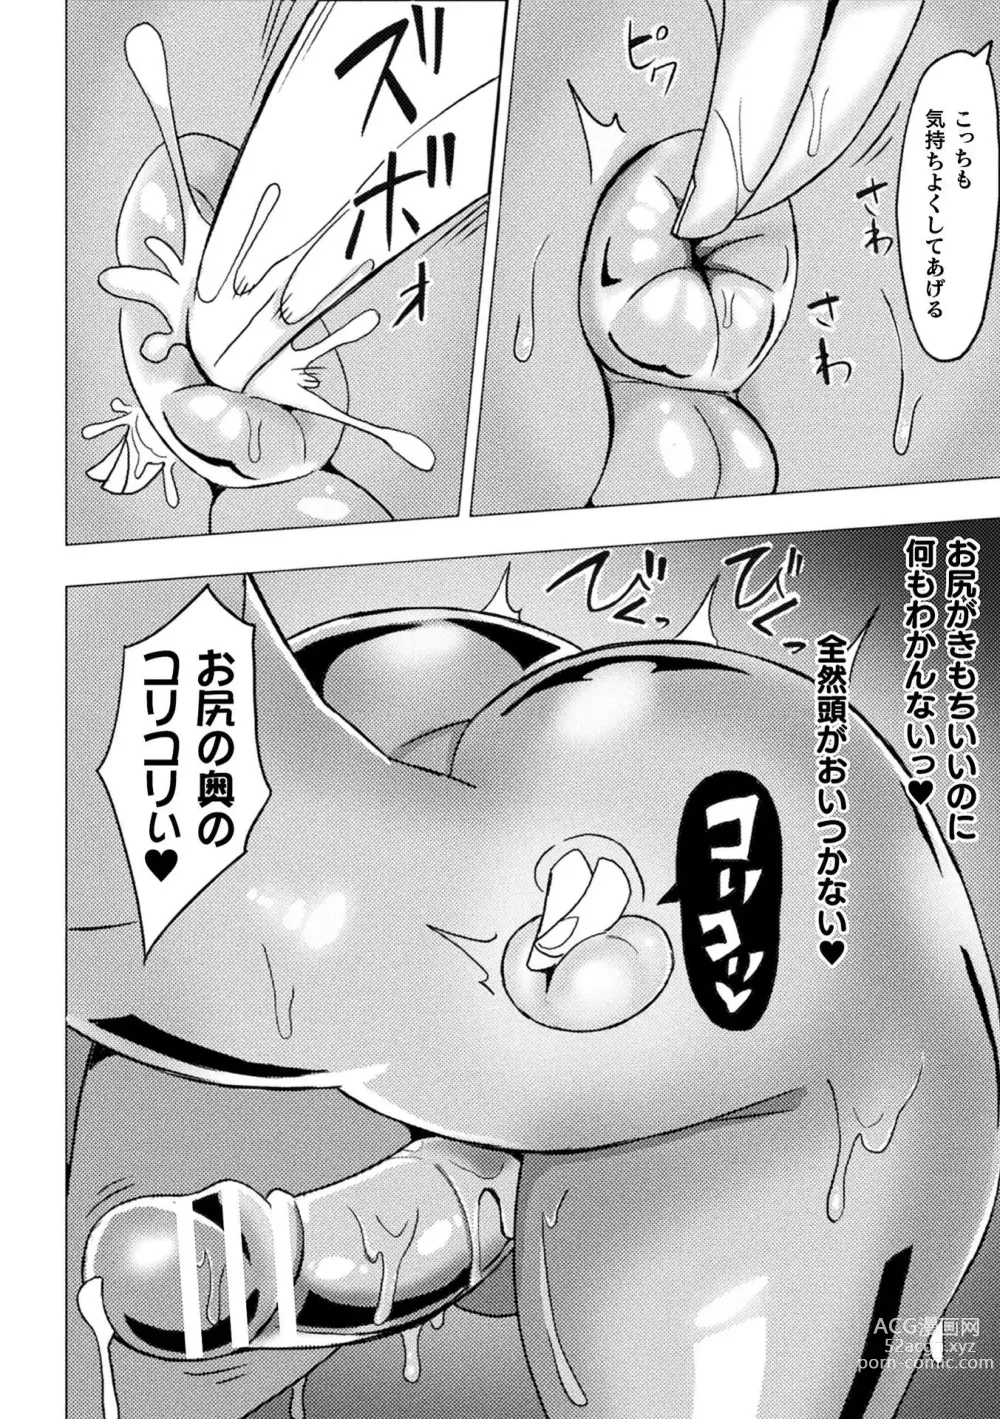 Page 74 of manga Bessatsu Comic Unreal Joutai Henka & Nikutai Kaizou Hen Vol. 1